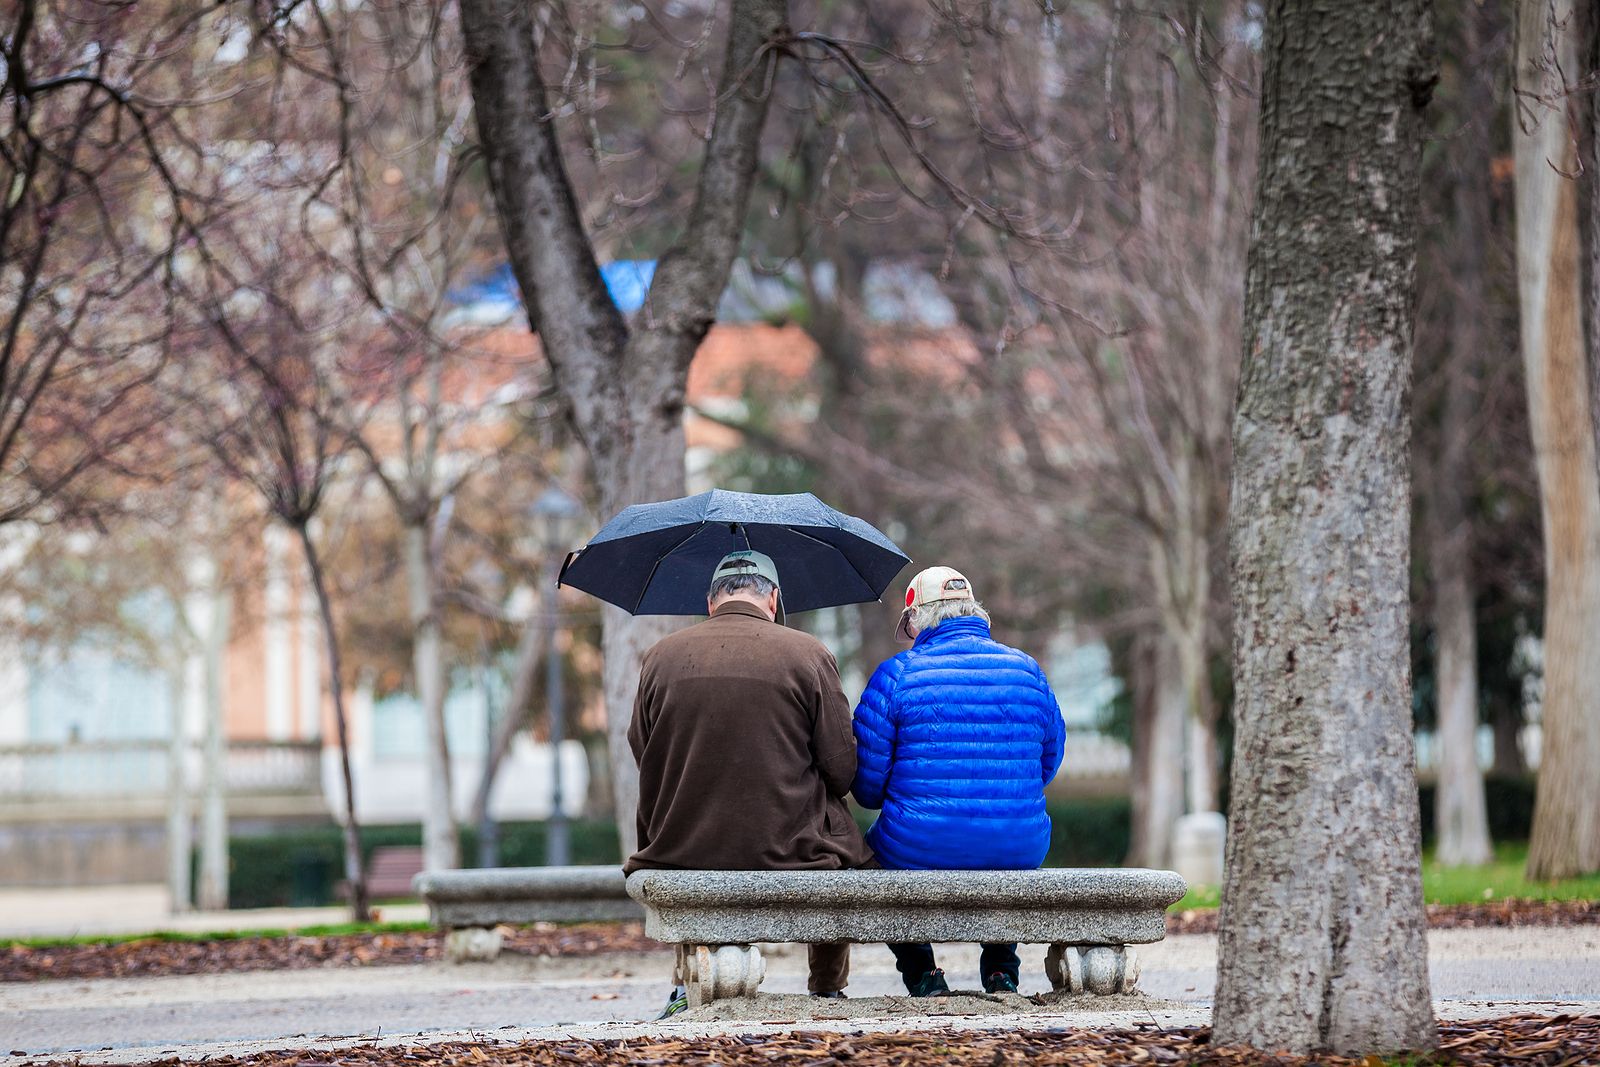 Los españoles bajarían antes las pensiones que el gasto en sanidad y educación